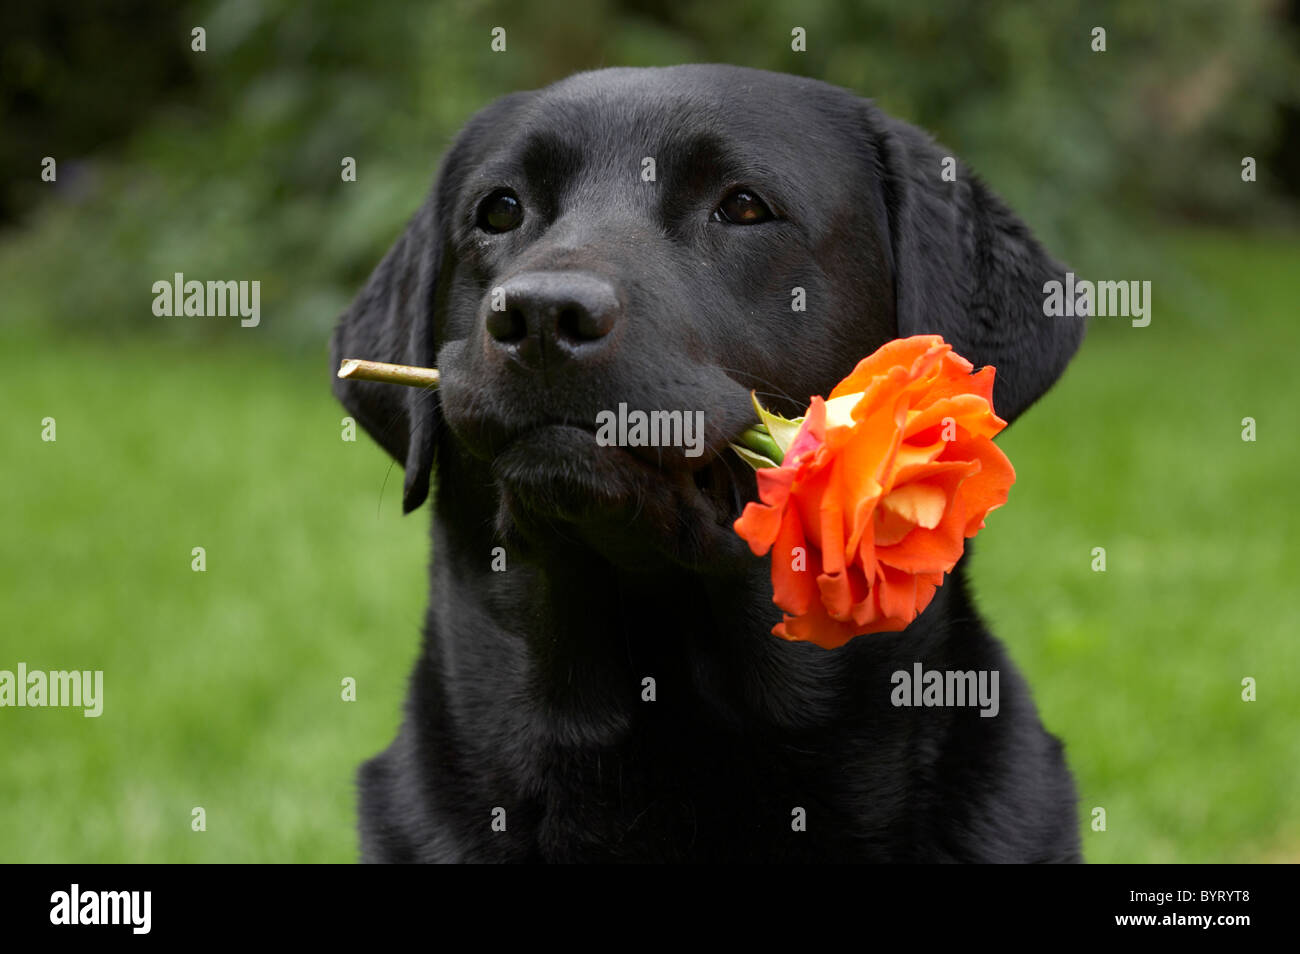 Labrador Retriever with a rose Stock Photo